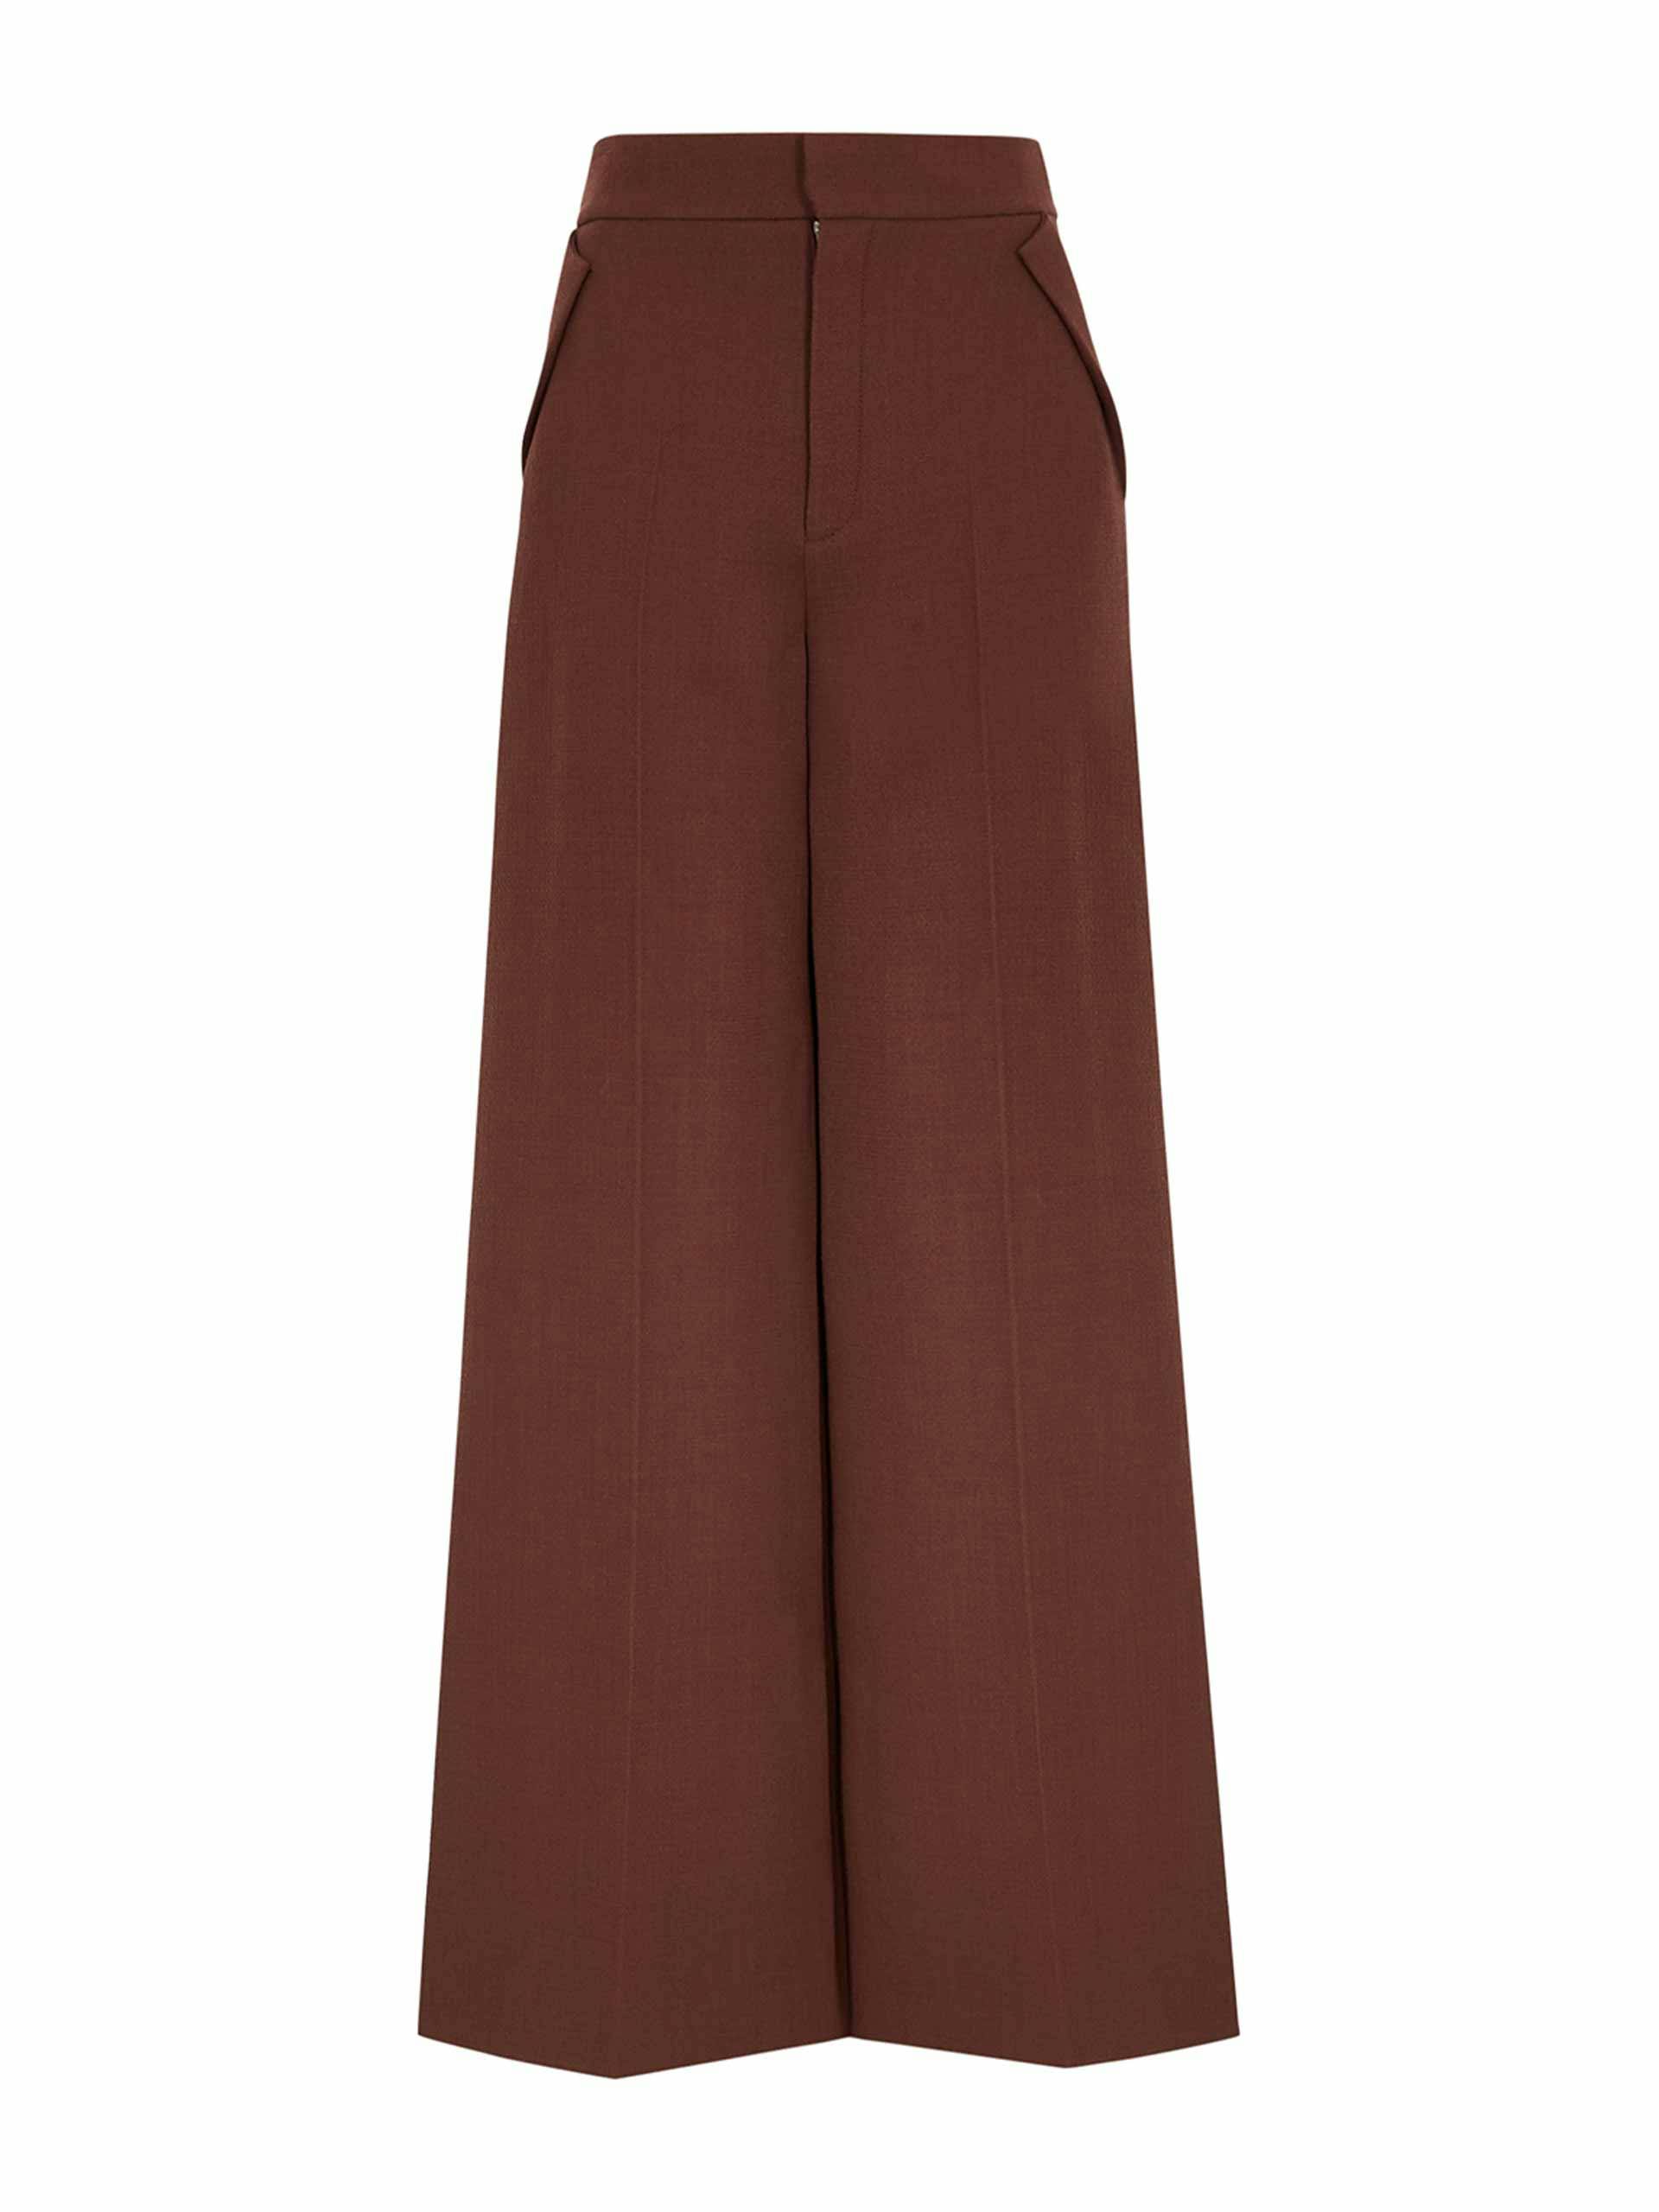 Brown wool trousers